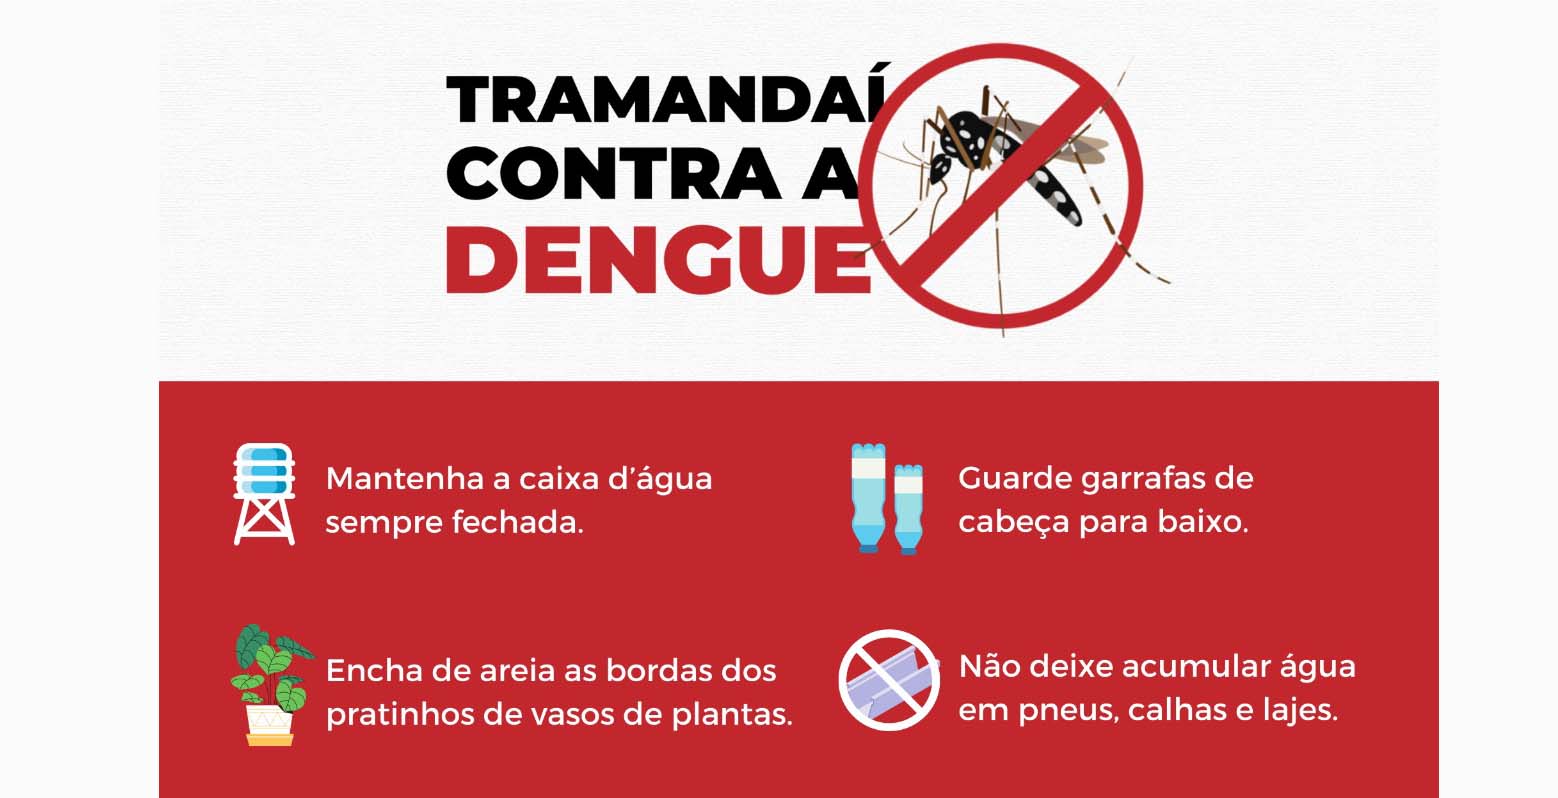 Tramandaí contra a dengue: Saiba quais os cuidados para evitar a proliferação do mosquito Aedes aegypti